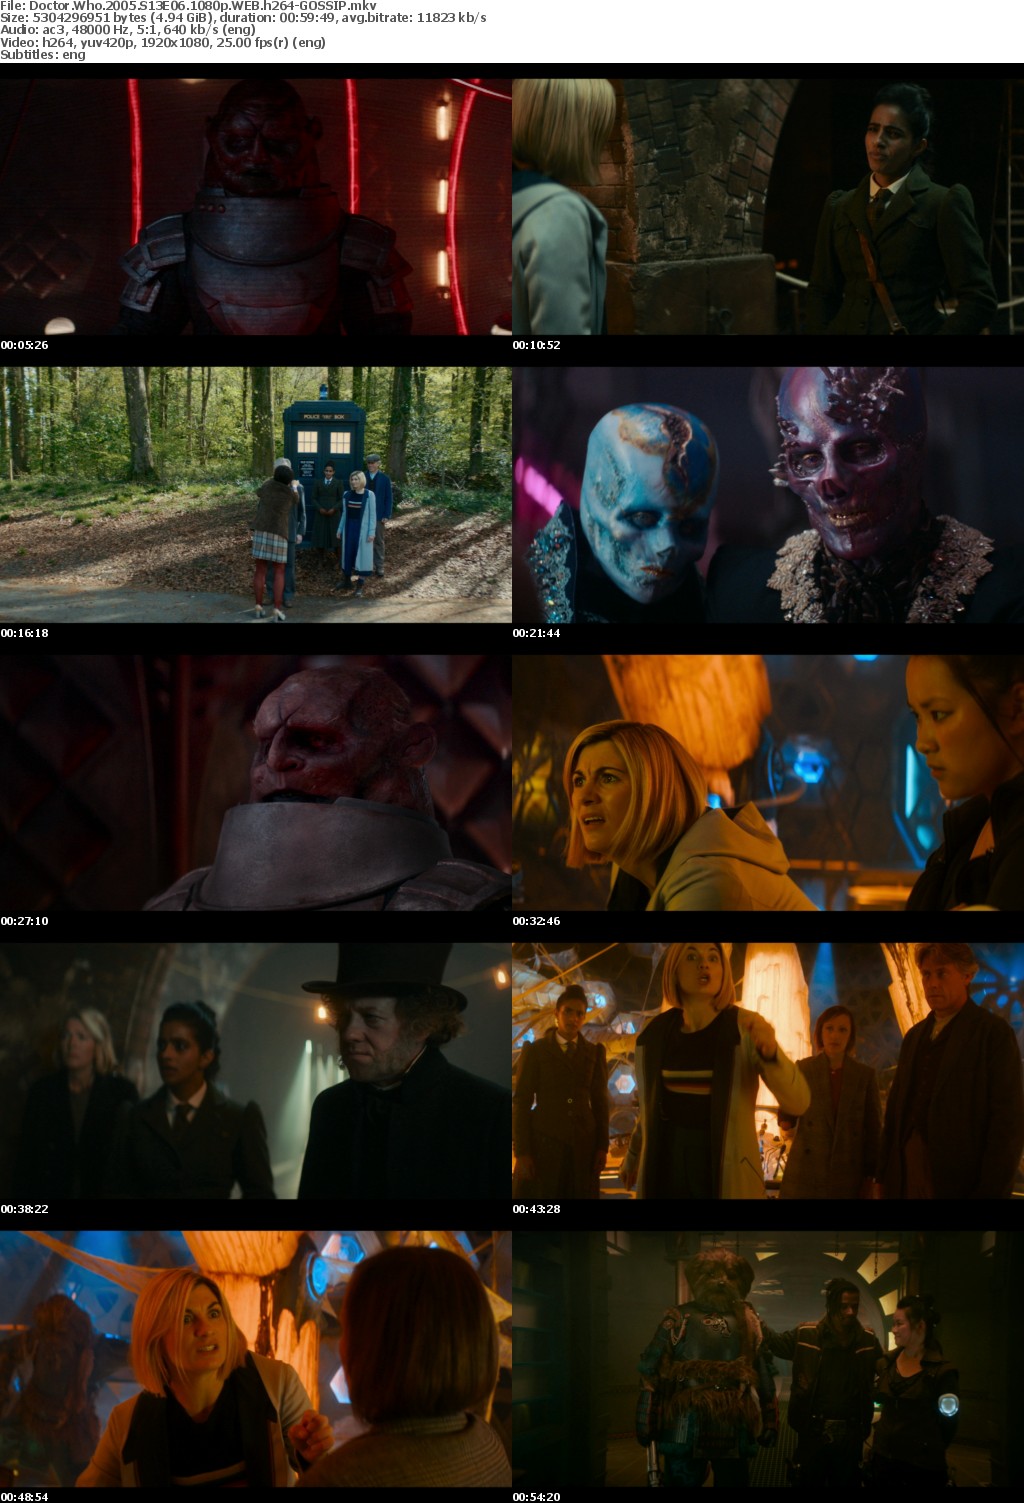 Doctor Who 2005 S13E06 1080p WEB h264-GOSSIP